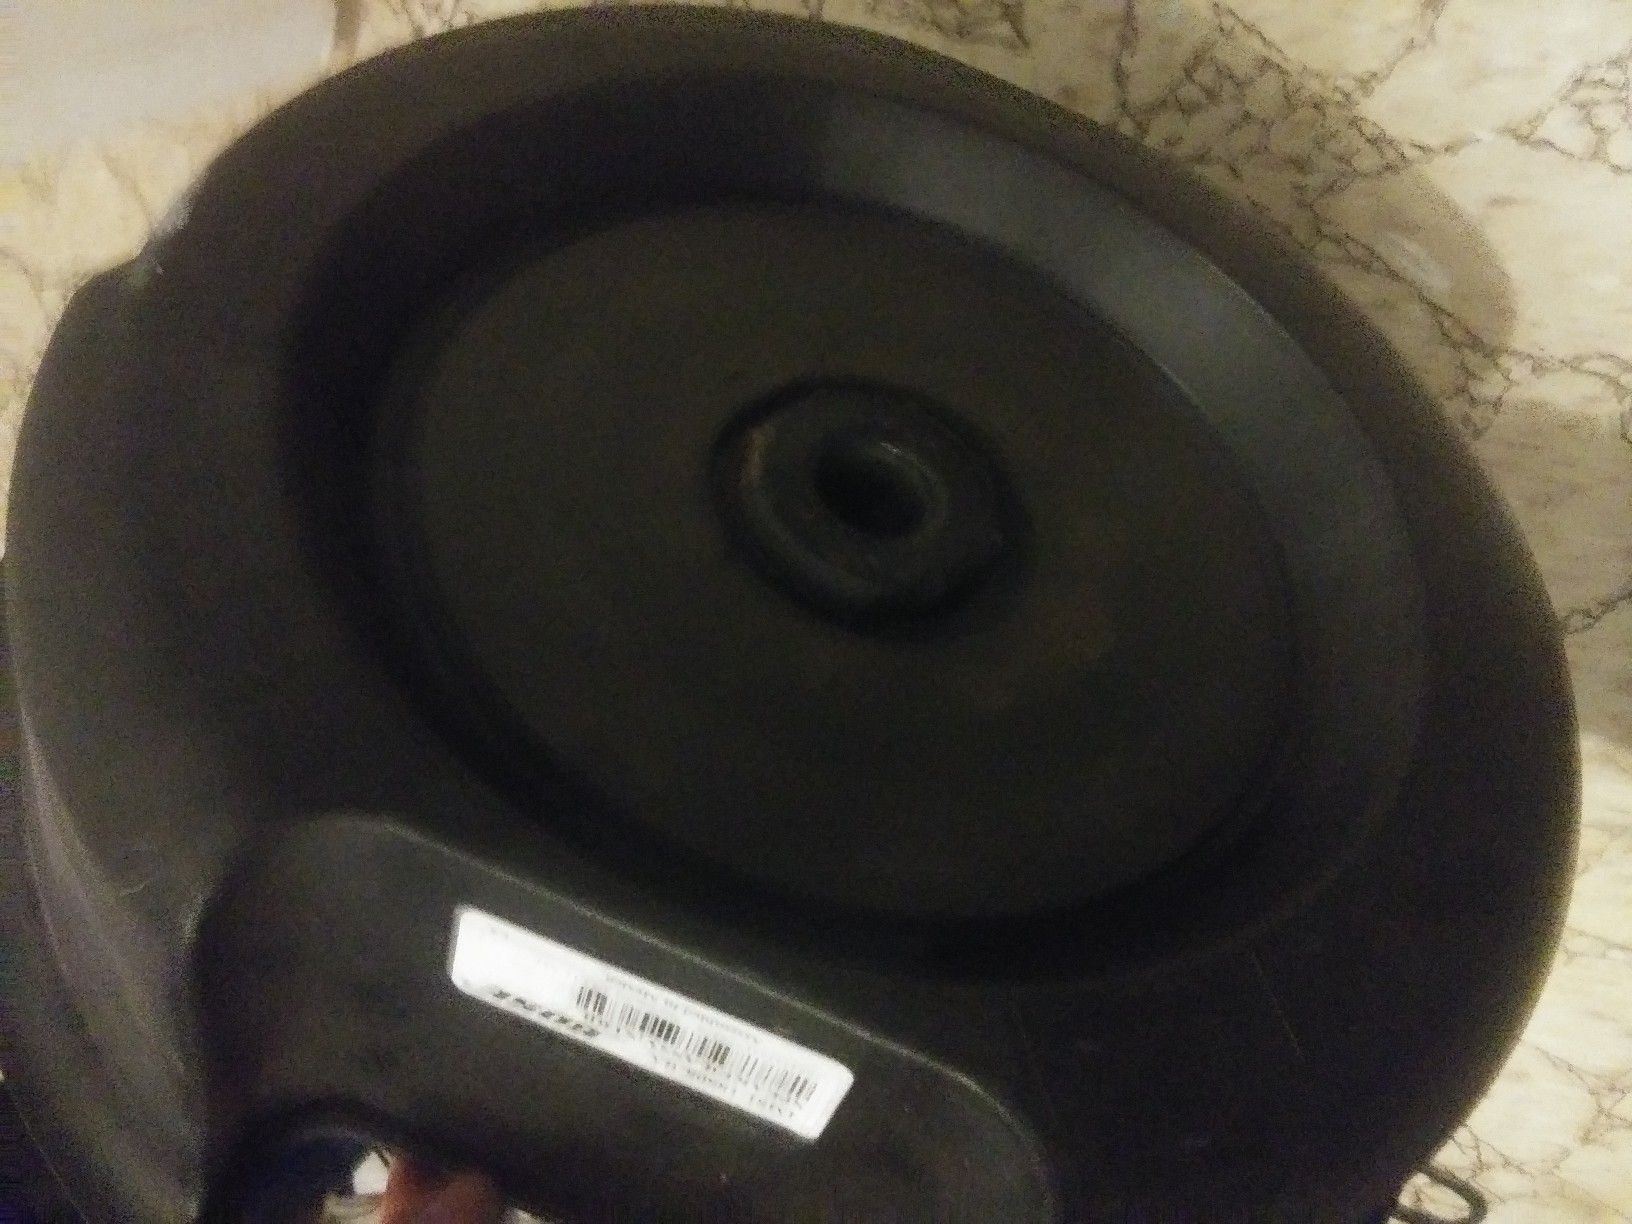 Stock Bose speaker taken out of my mazda 3